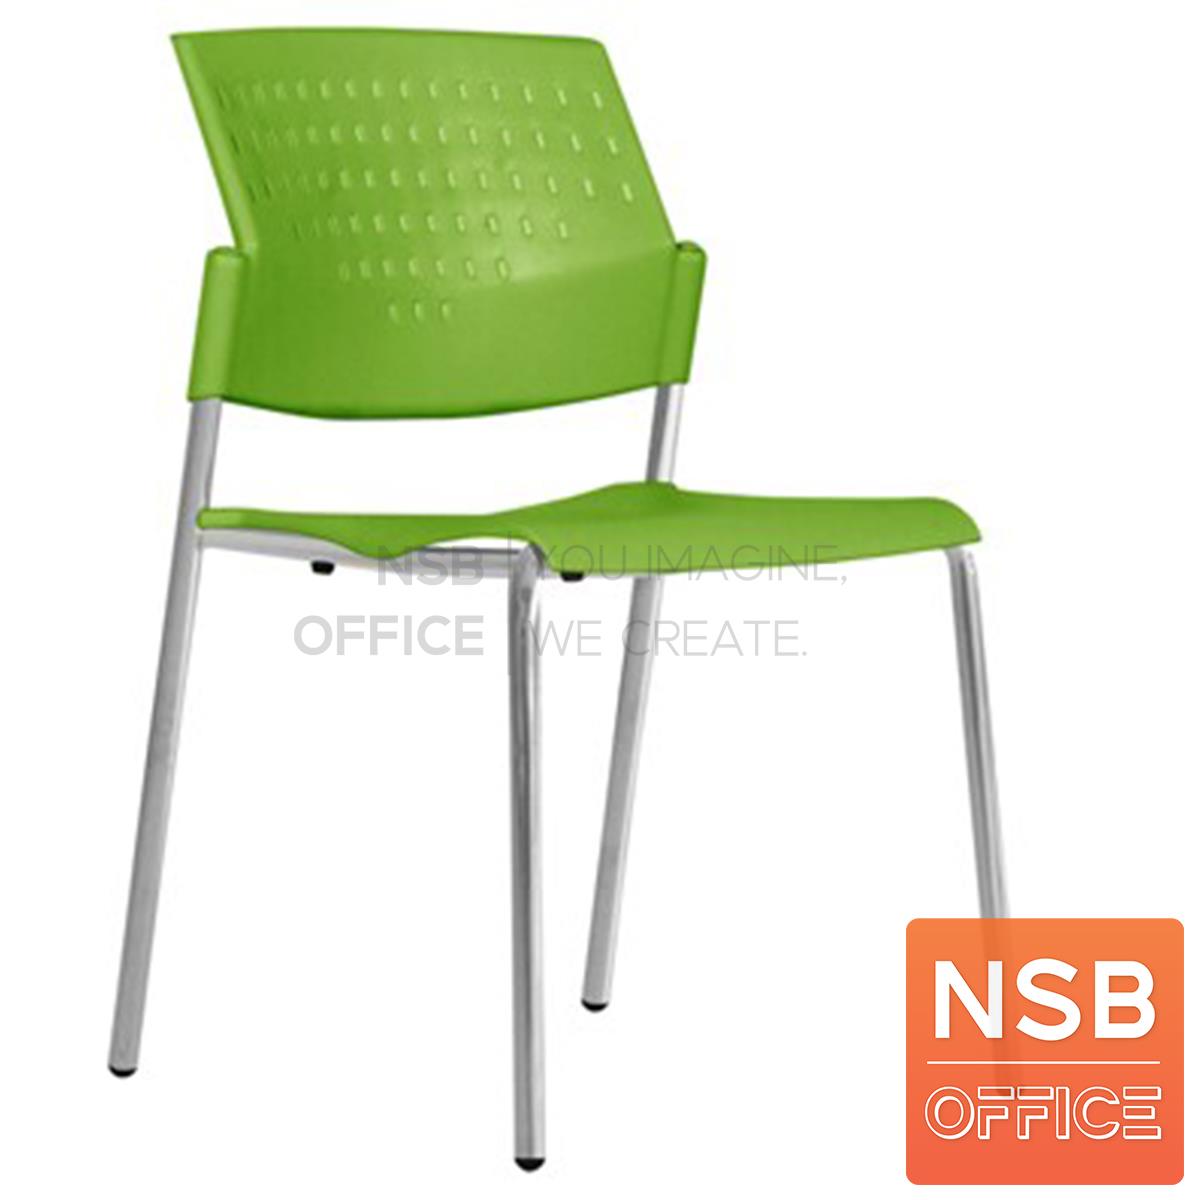 B05A188:เก้าอี้อเนกประสงค์เฟรมโพลี่ รุ่น ms-DG  ขาเหล็กชุบโครเมียม